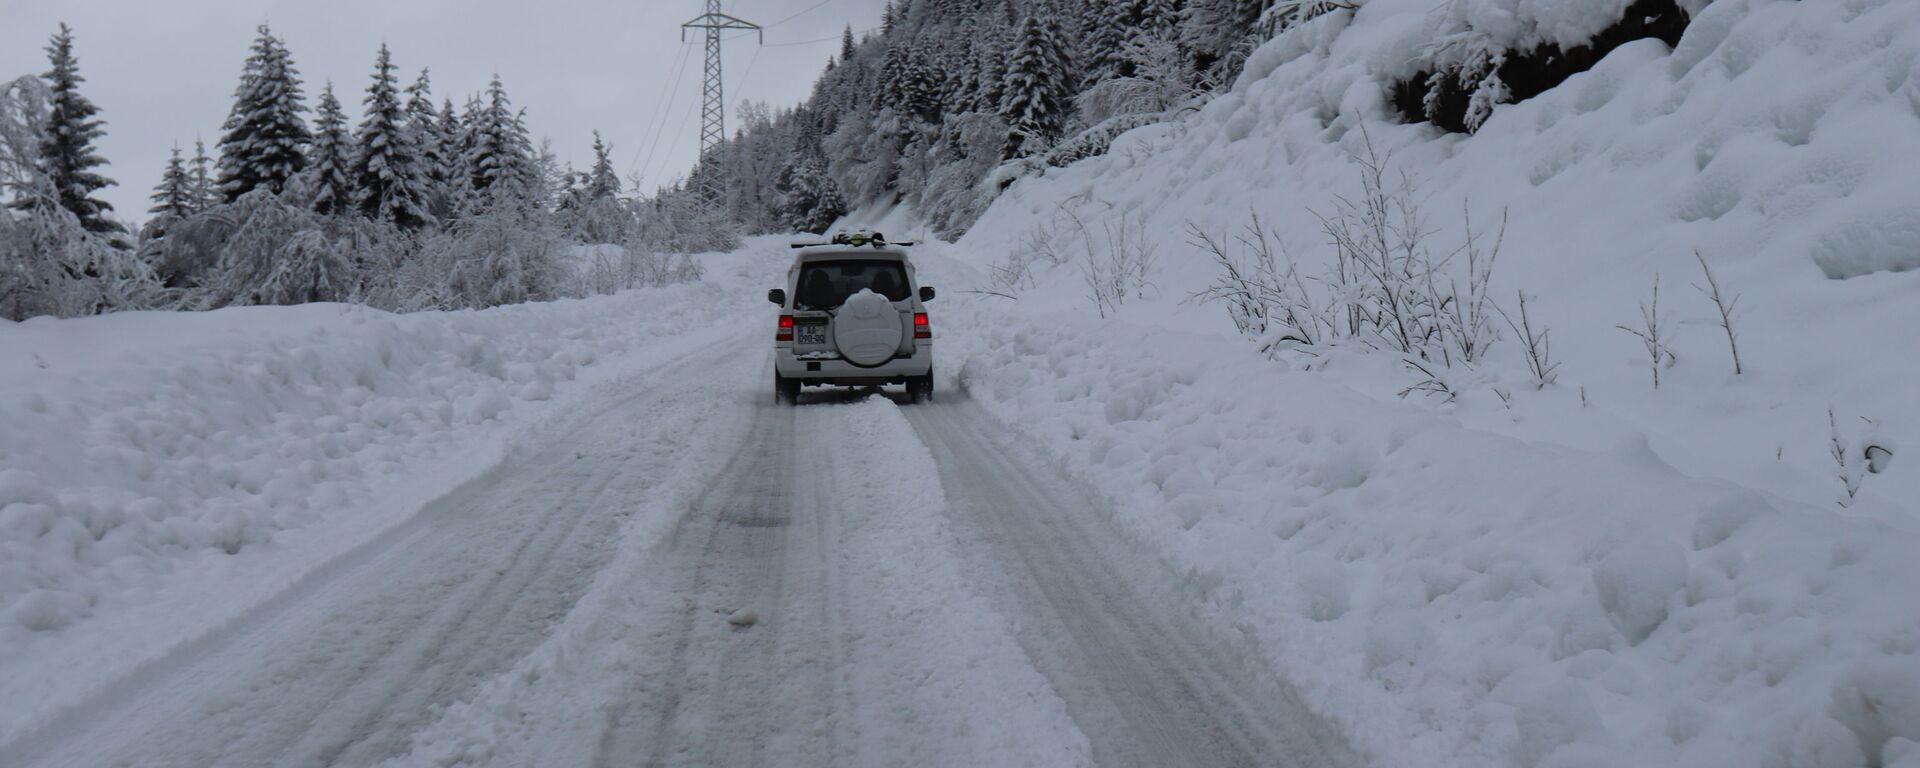 Горная дорога в снегу - машина едет среди снежных сугробов - Sputnik Грузия, 1920, 25.01.2021